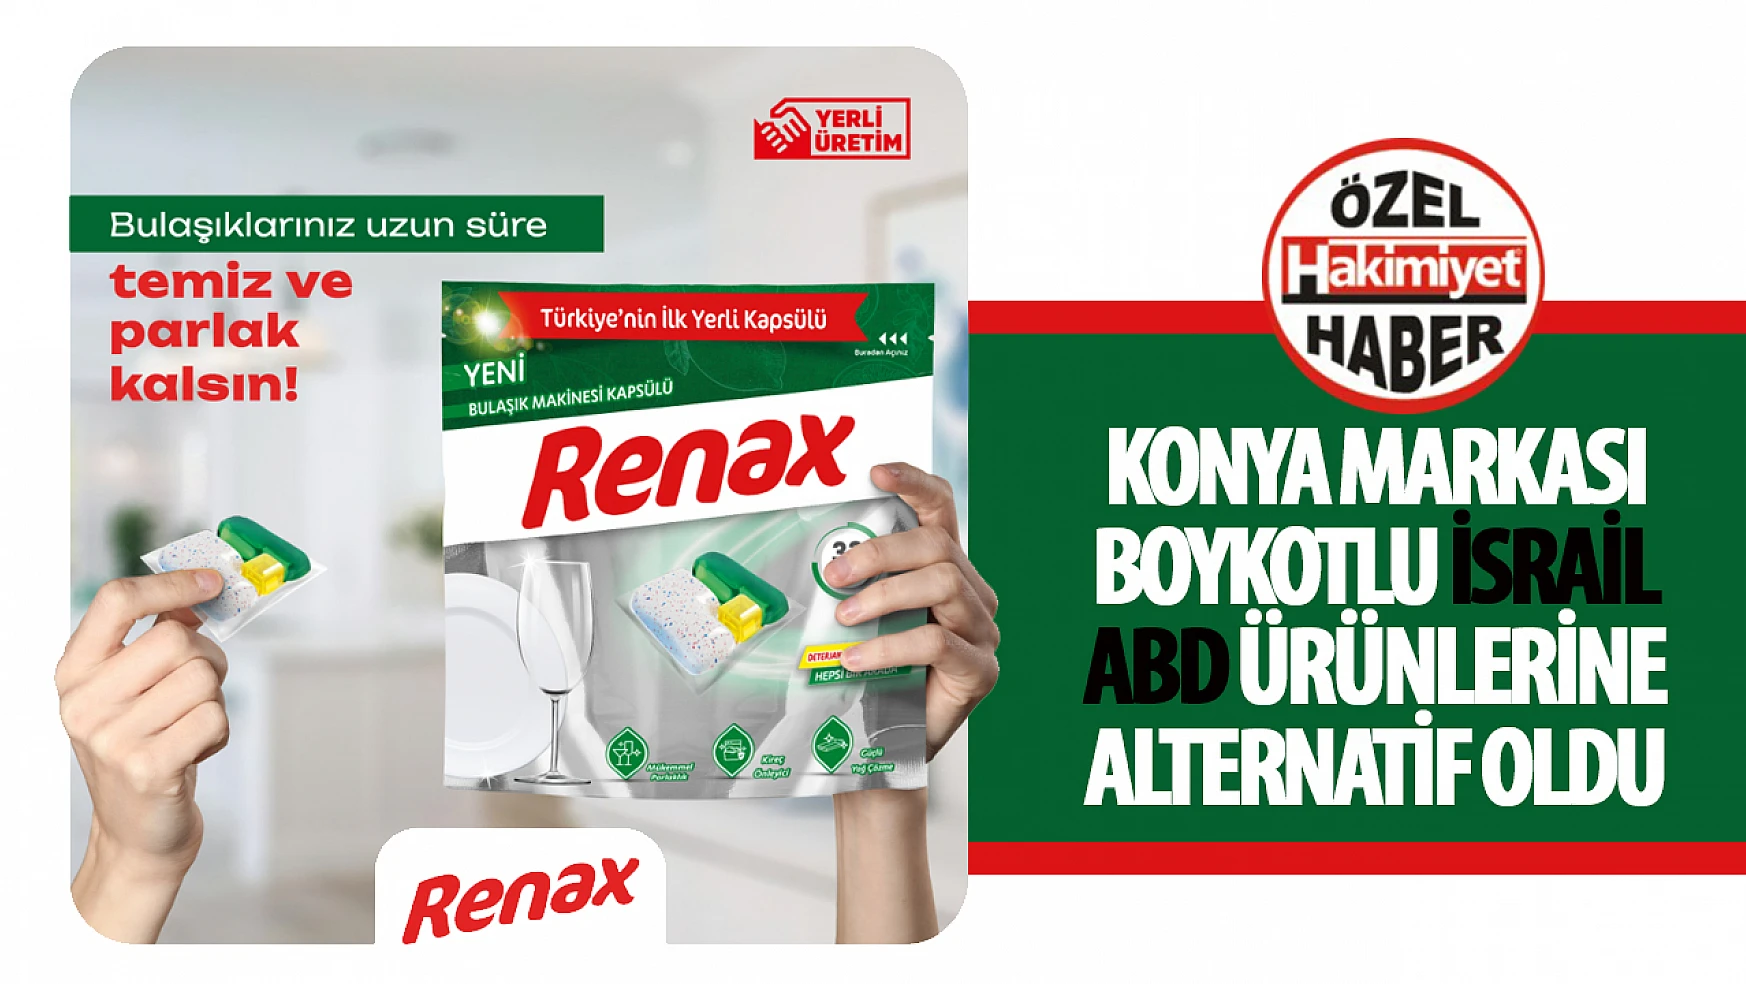 Konya Firması Renax, Temizlik Ürünleri İle İsrail Ürünlerine Alternatif Oldu